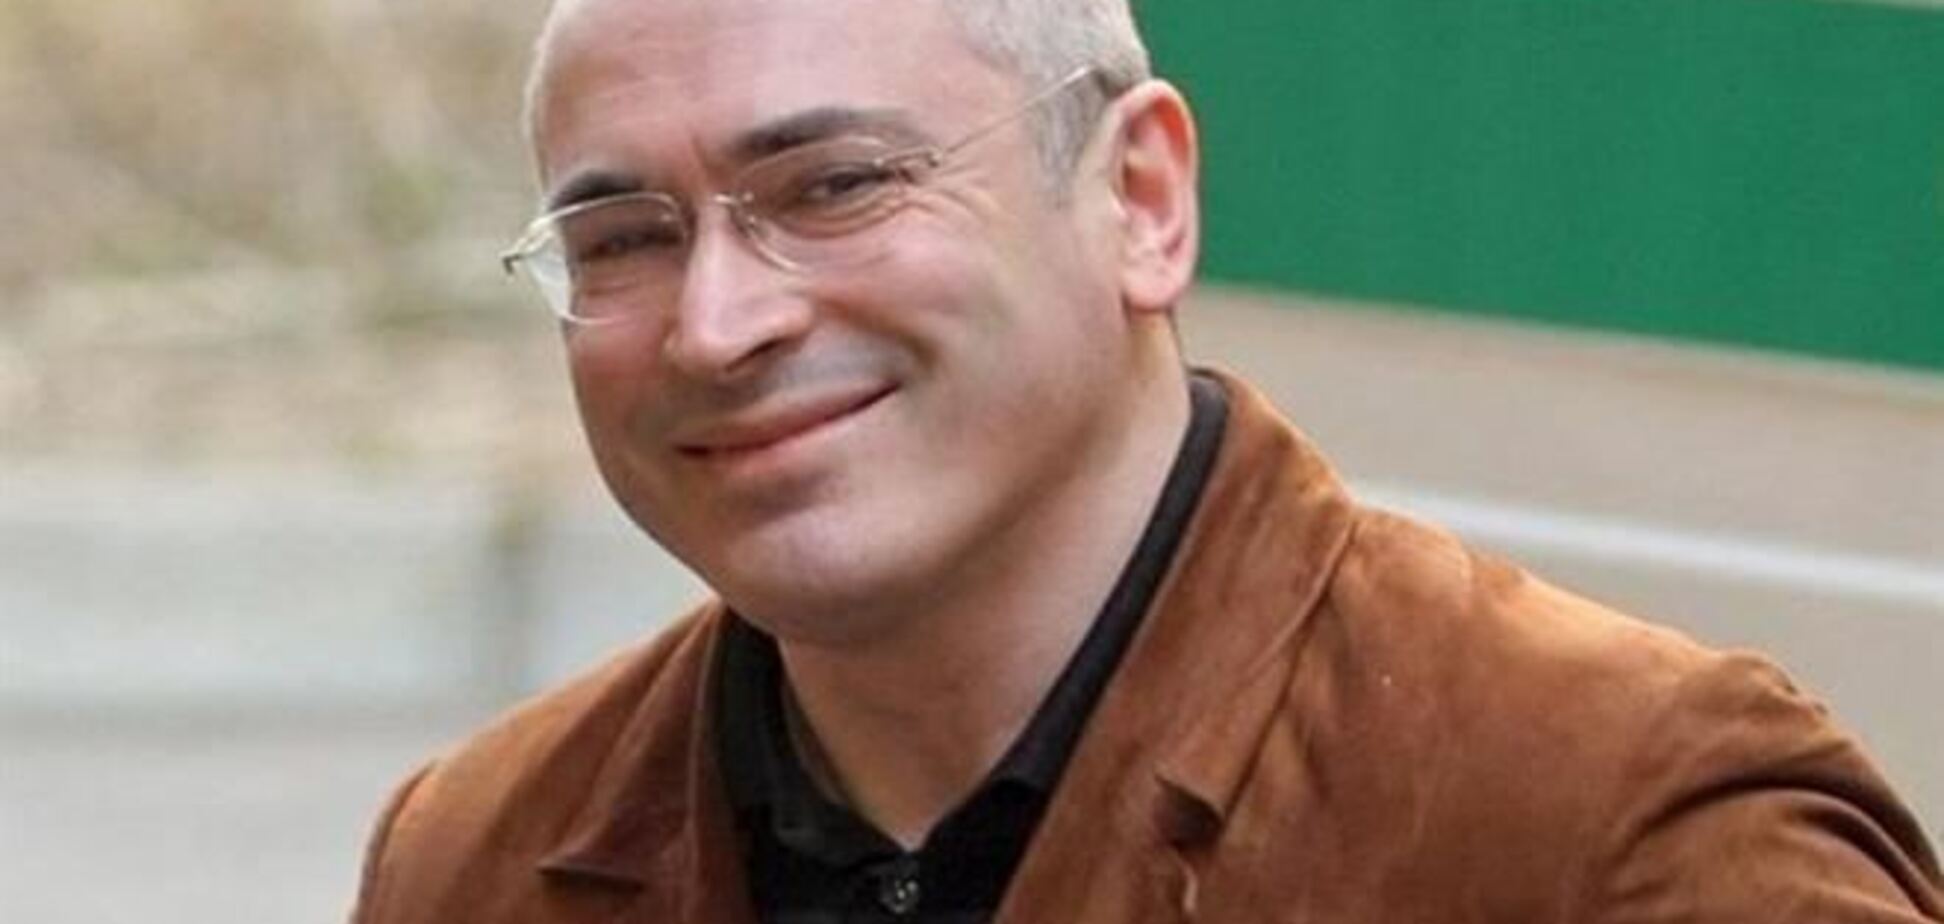 МИД Швейцарии подтверждает запрос Ходорковского на получение визы